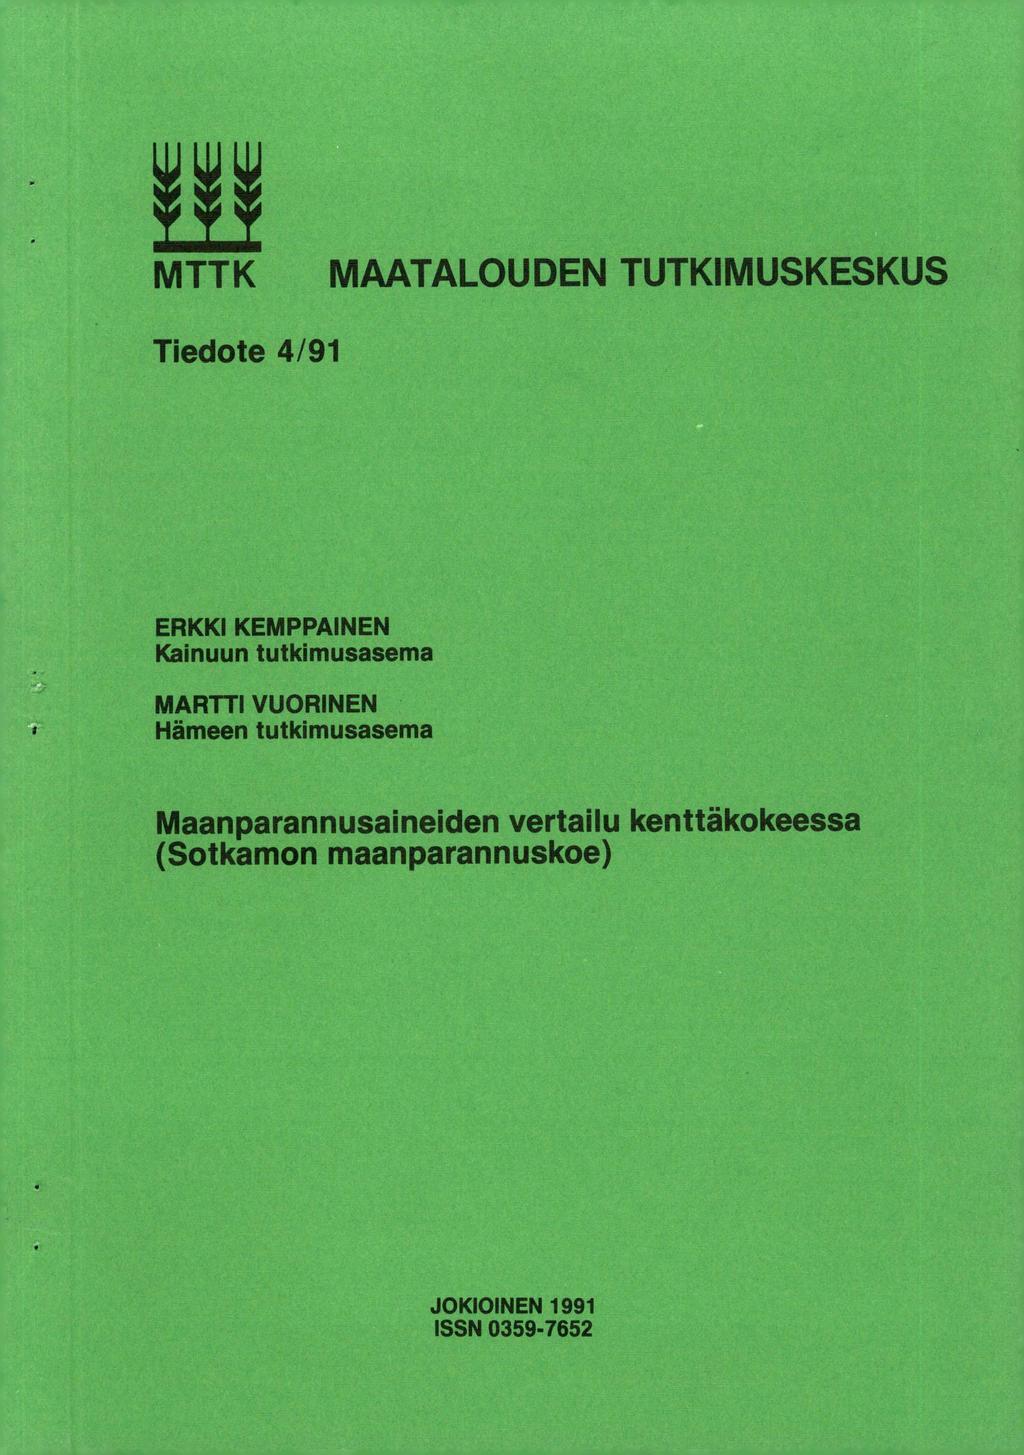 MTTK MAATALOUDEN TUTKIMUSKESKUS Tiedote 4/91 ERKKI KEMPPAINEN Kainuun tutkimusasema MARTTI VUORINEN Hämeen